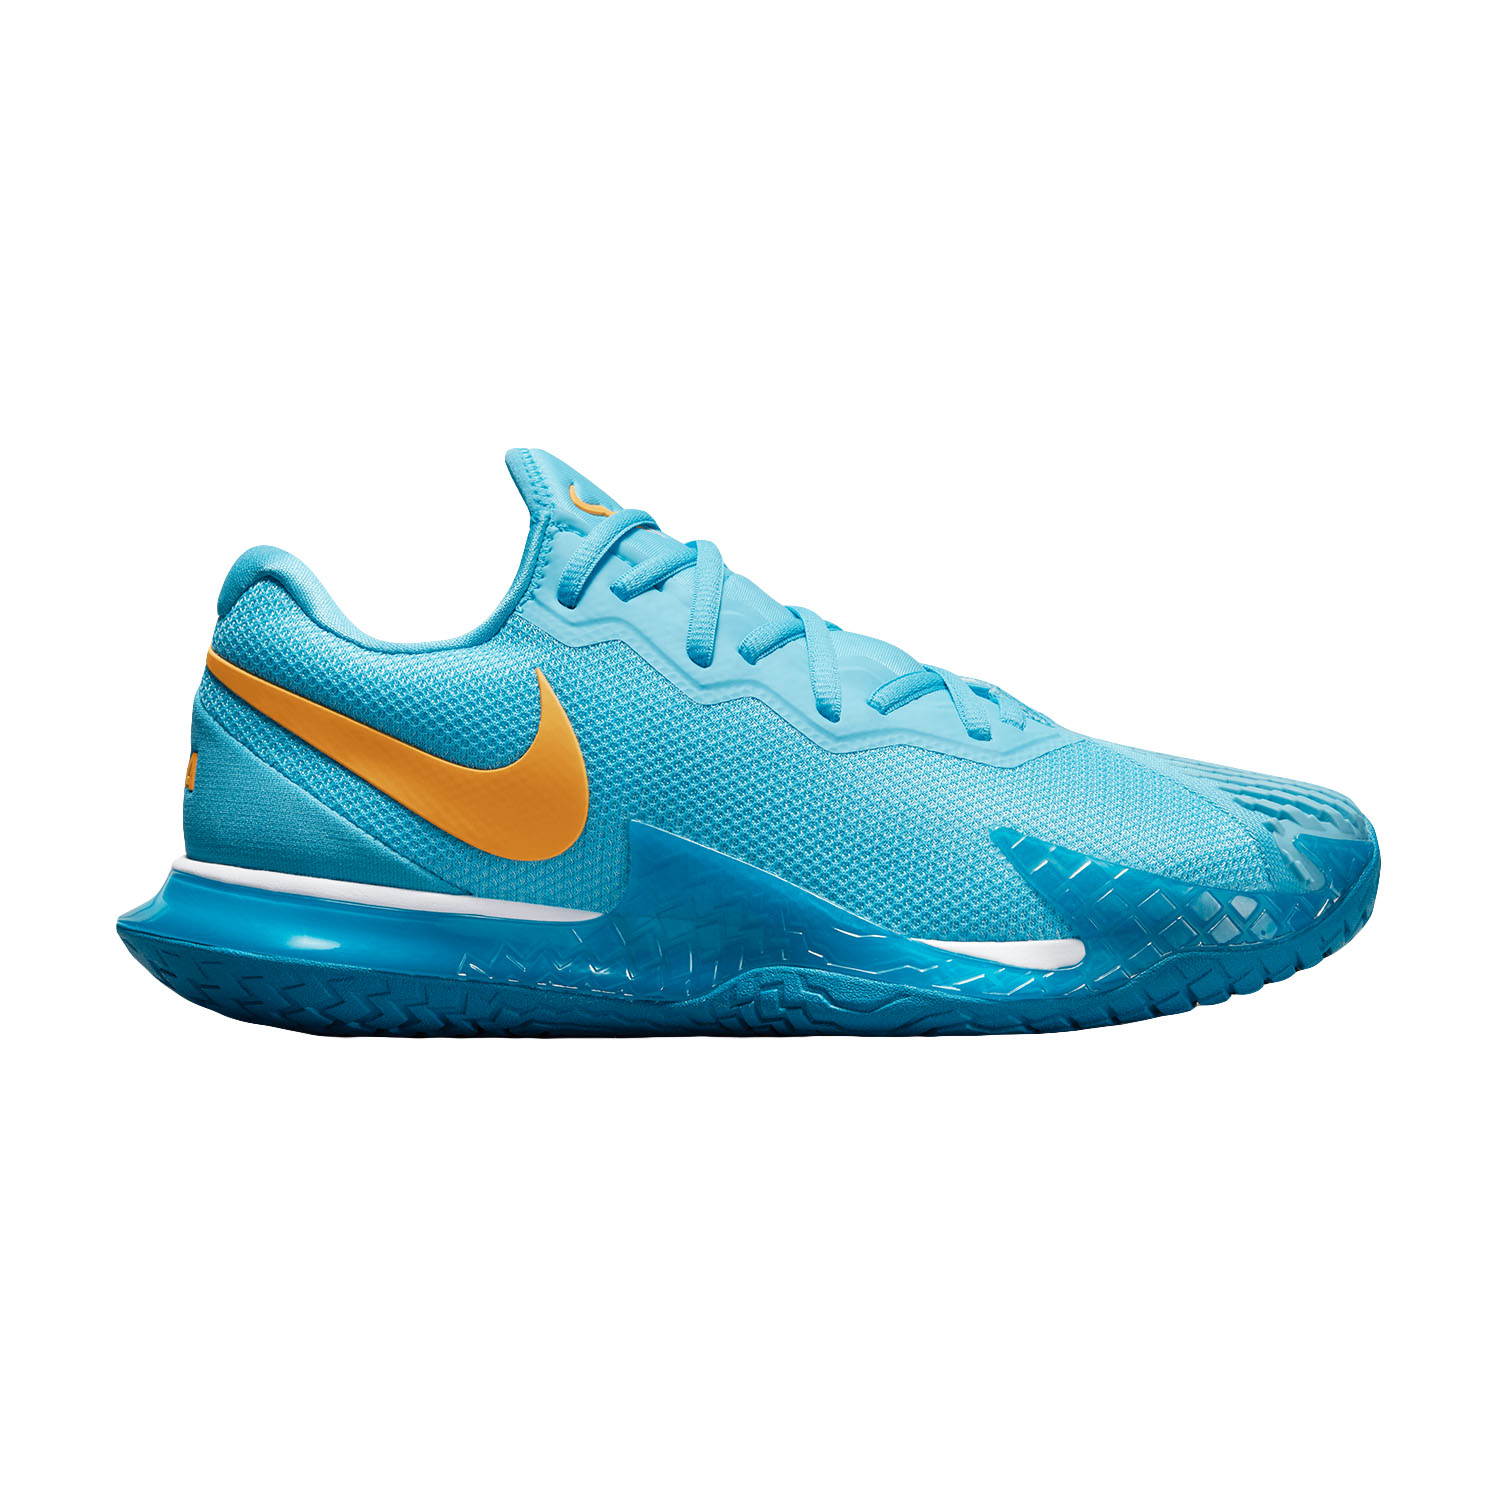 Publicidad tenaz Espinoso Nike Zoom Vapor Cage 4 Rafa HC Men's Tennis Shoes - Baltic Blue